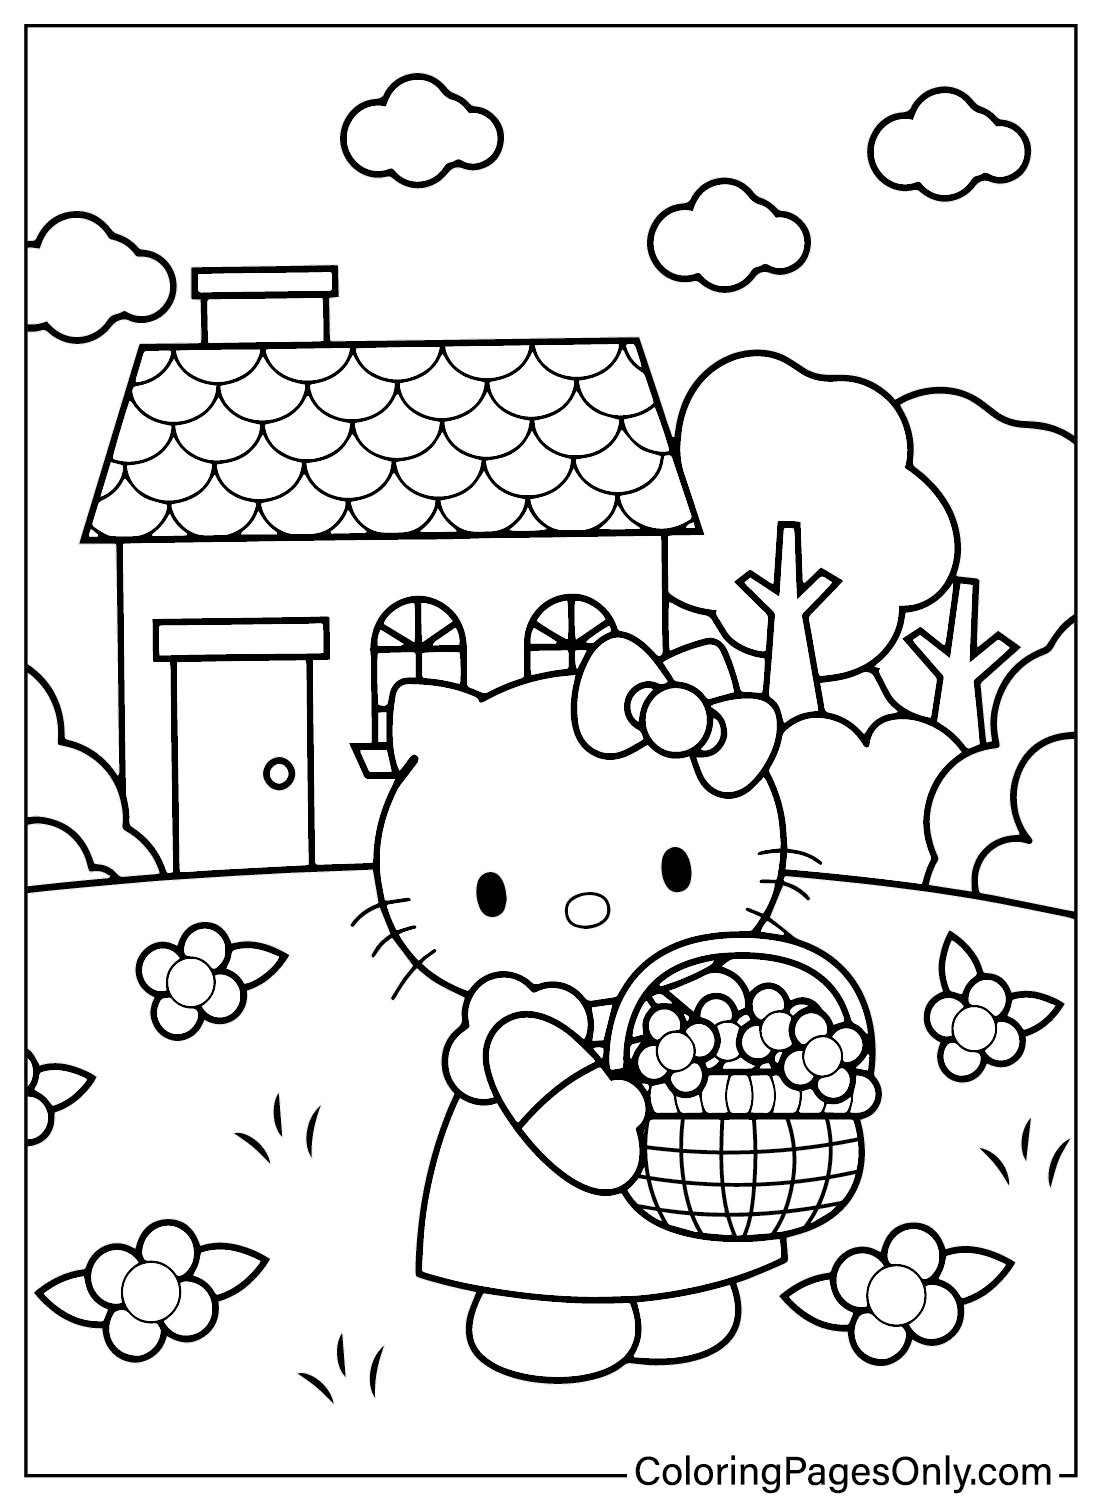 Página colorida da Hello Kitty